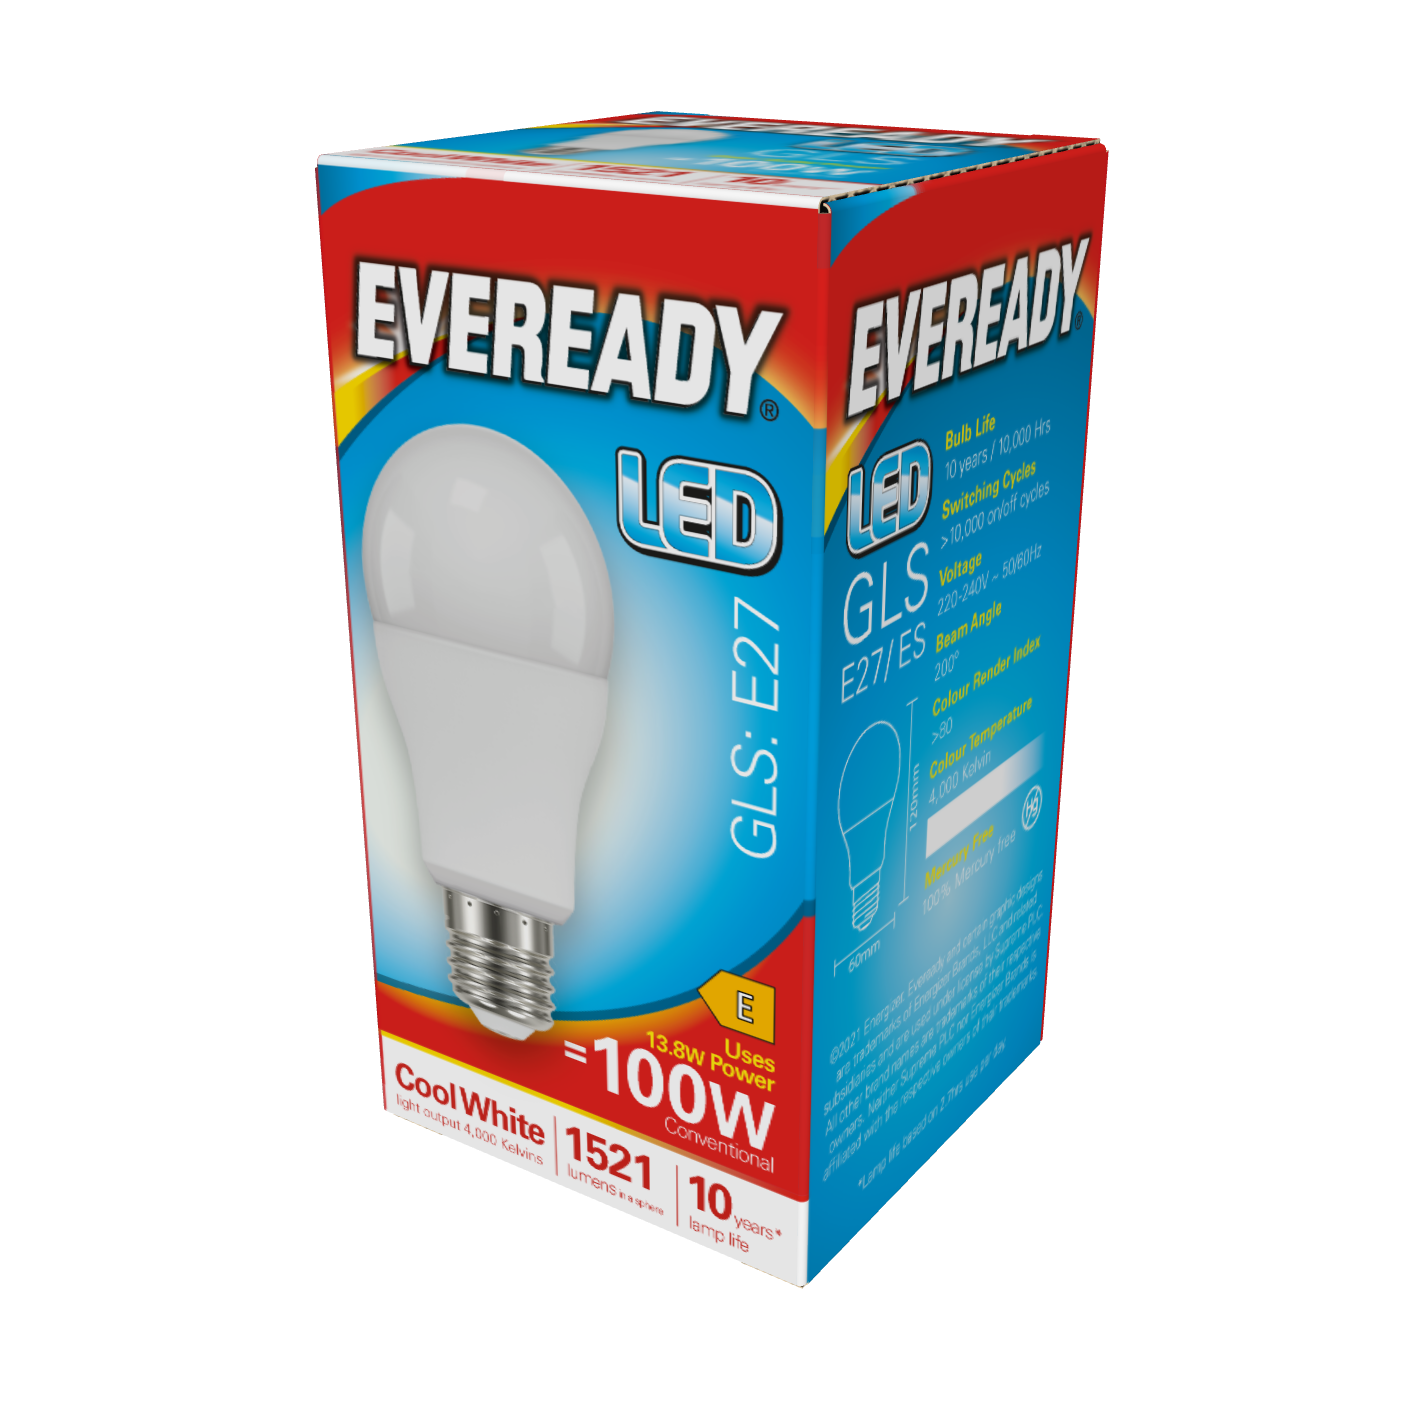 Eveready LED GLS E27 (ES) 1.521 lm 13,8 W 4.000 K (kaltweiß), Packung mit 1 Stück